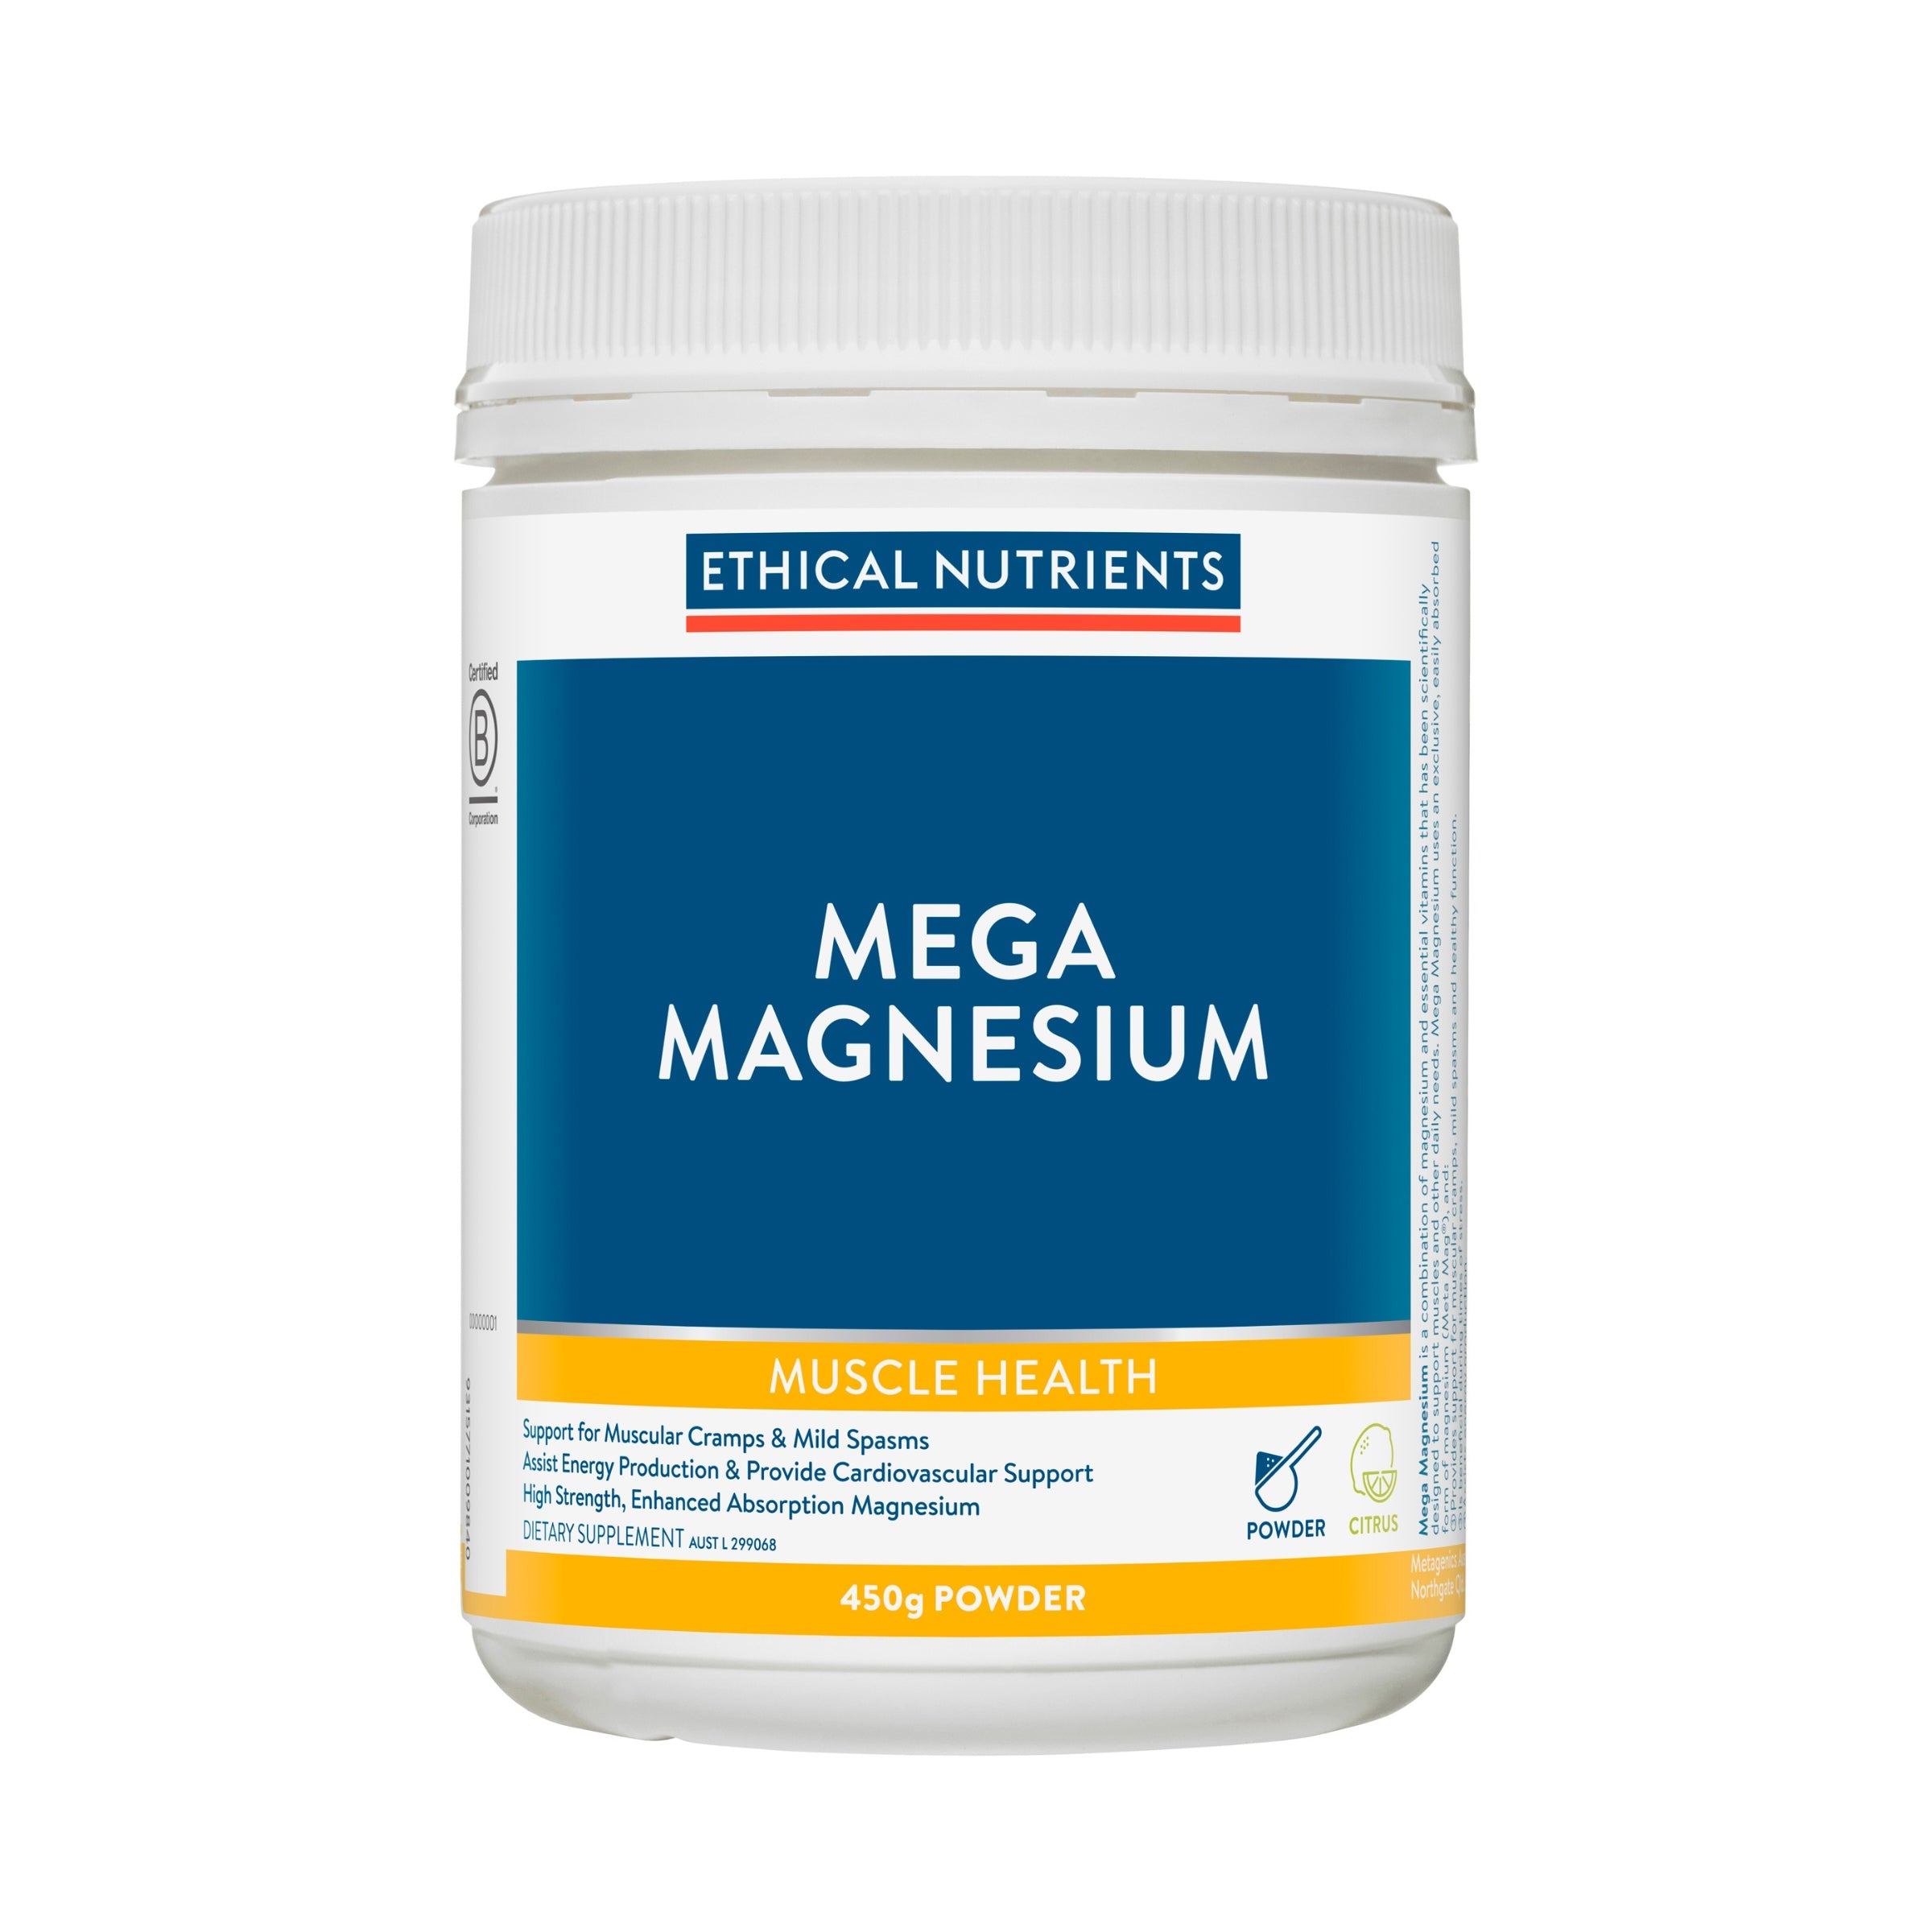 Ethical Nutrients Mega Magnesium Powder Citrus 450g #size & flavour_citrus 450g